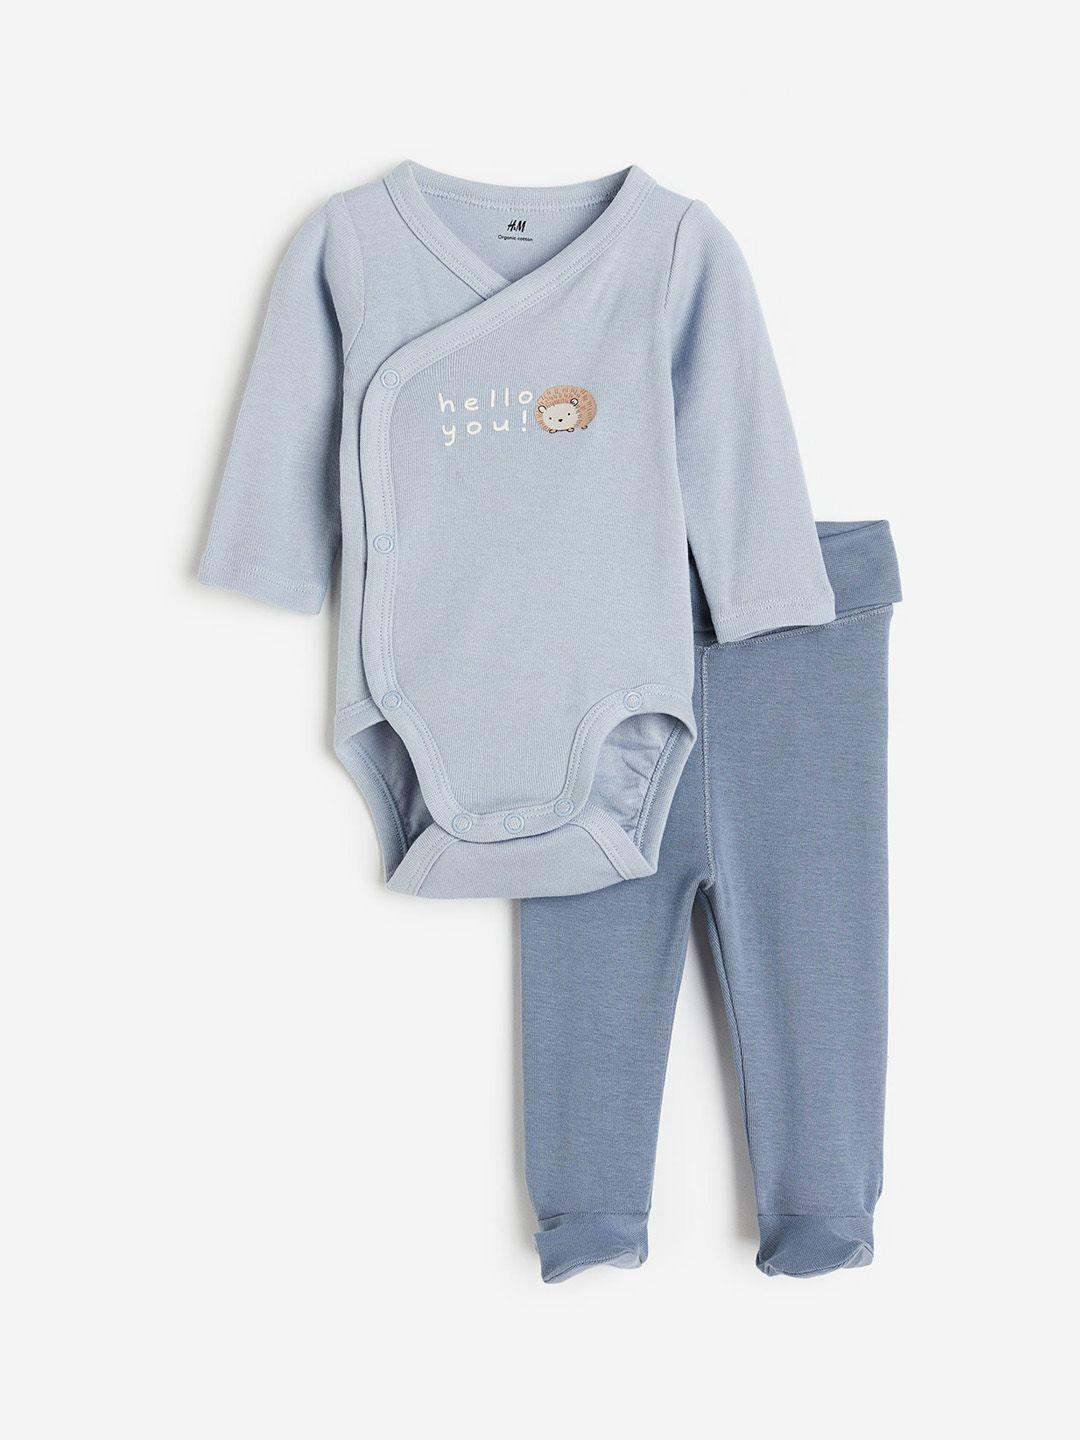 h&m infant kids 2-piece cotton clothing set